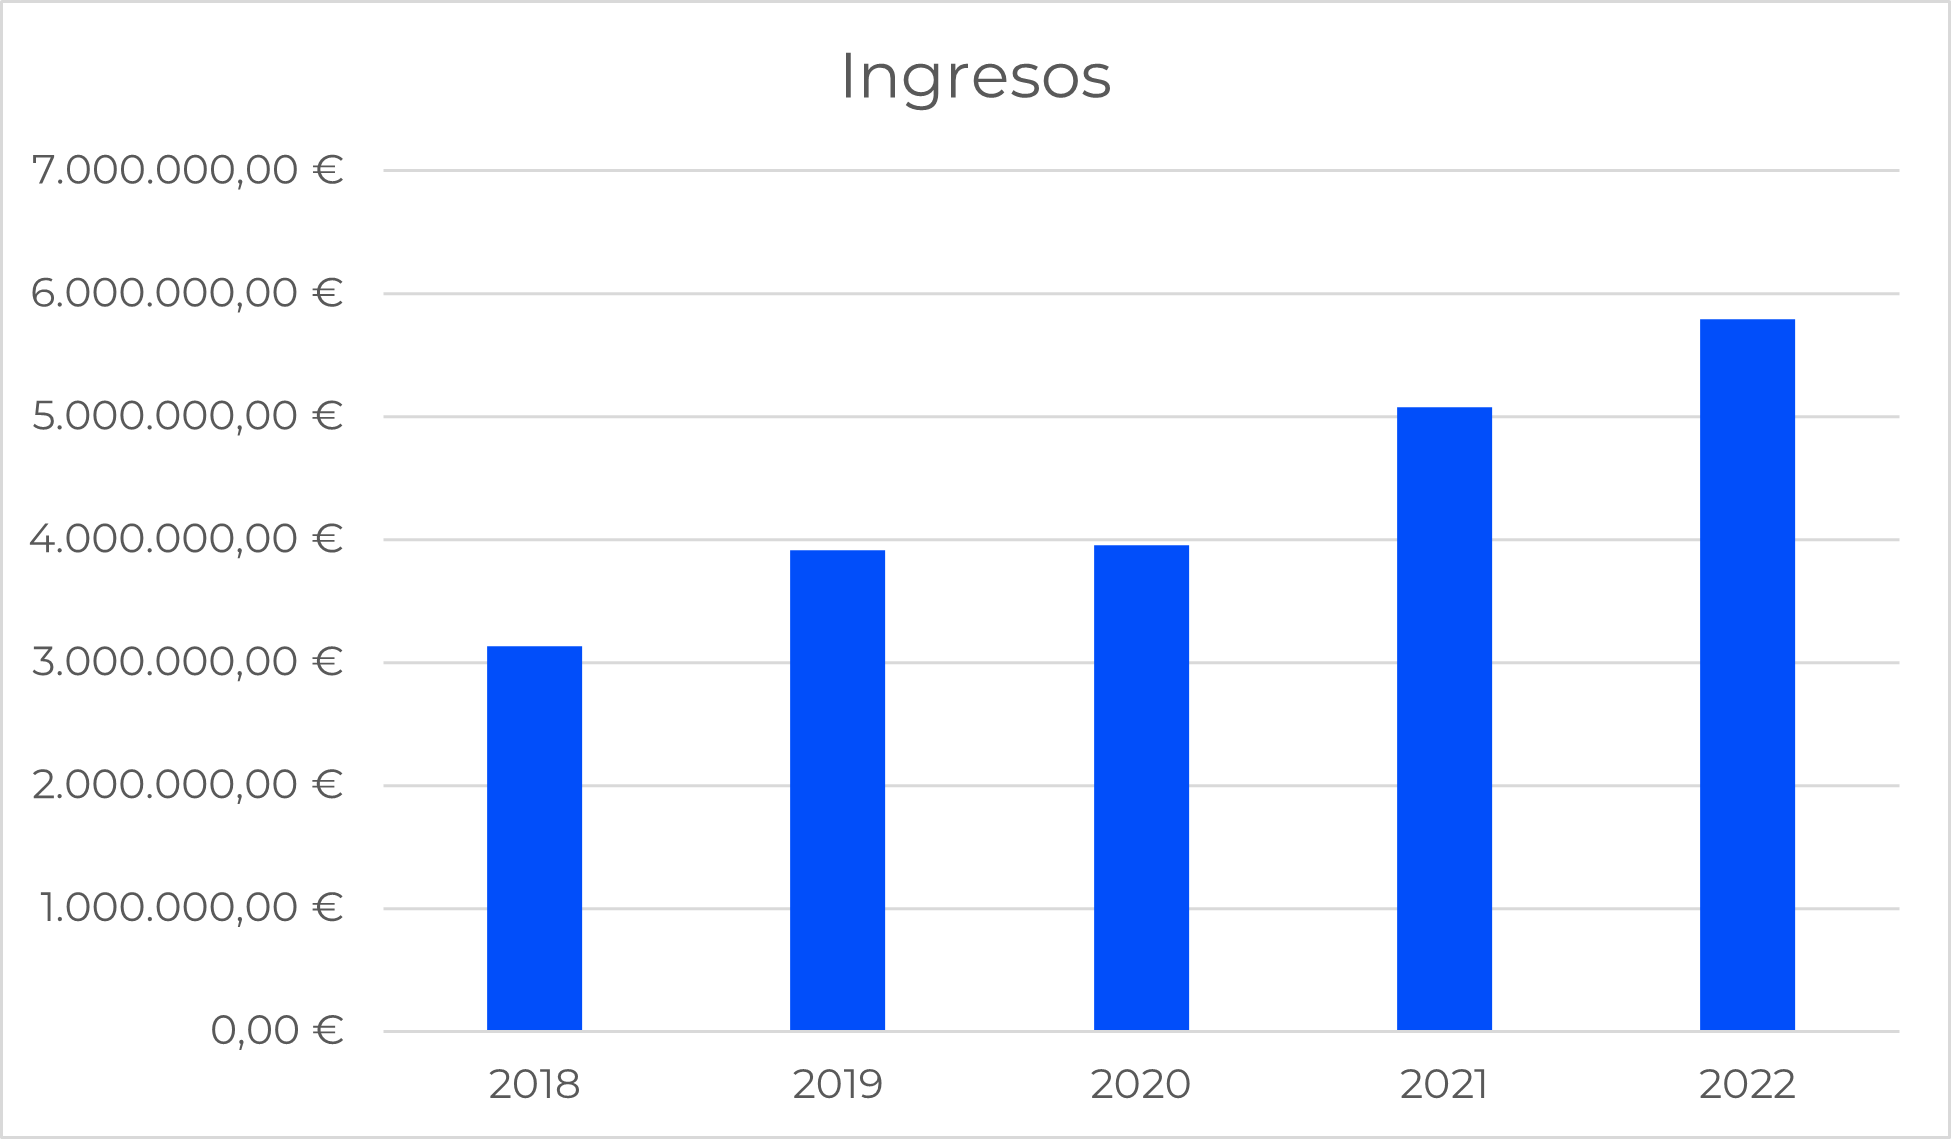 Ingresos prodevelop 2018 - 2022